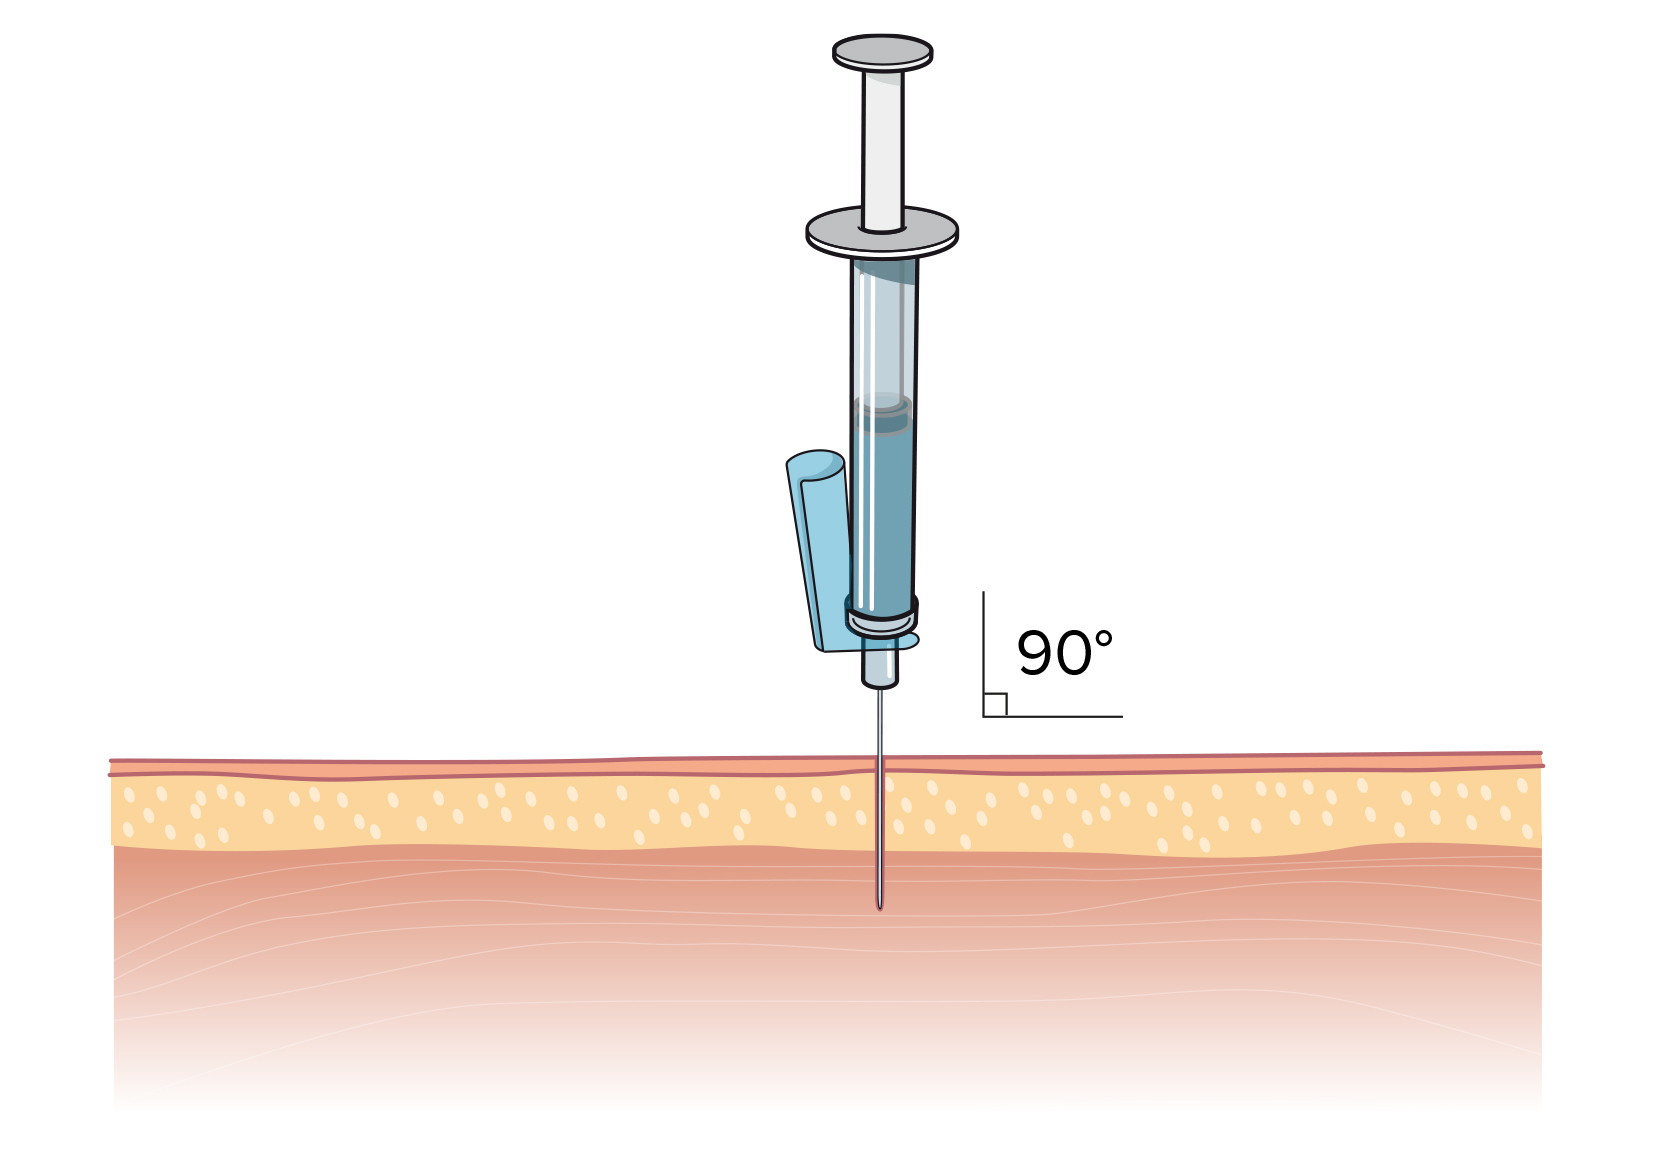 En nål som sticks ner i hudlagren och in i muskelvävnaden i 90 graders vinkel.